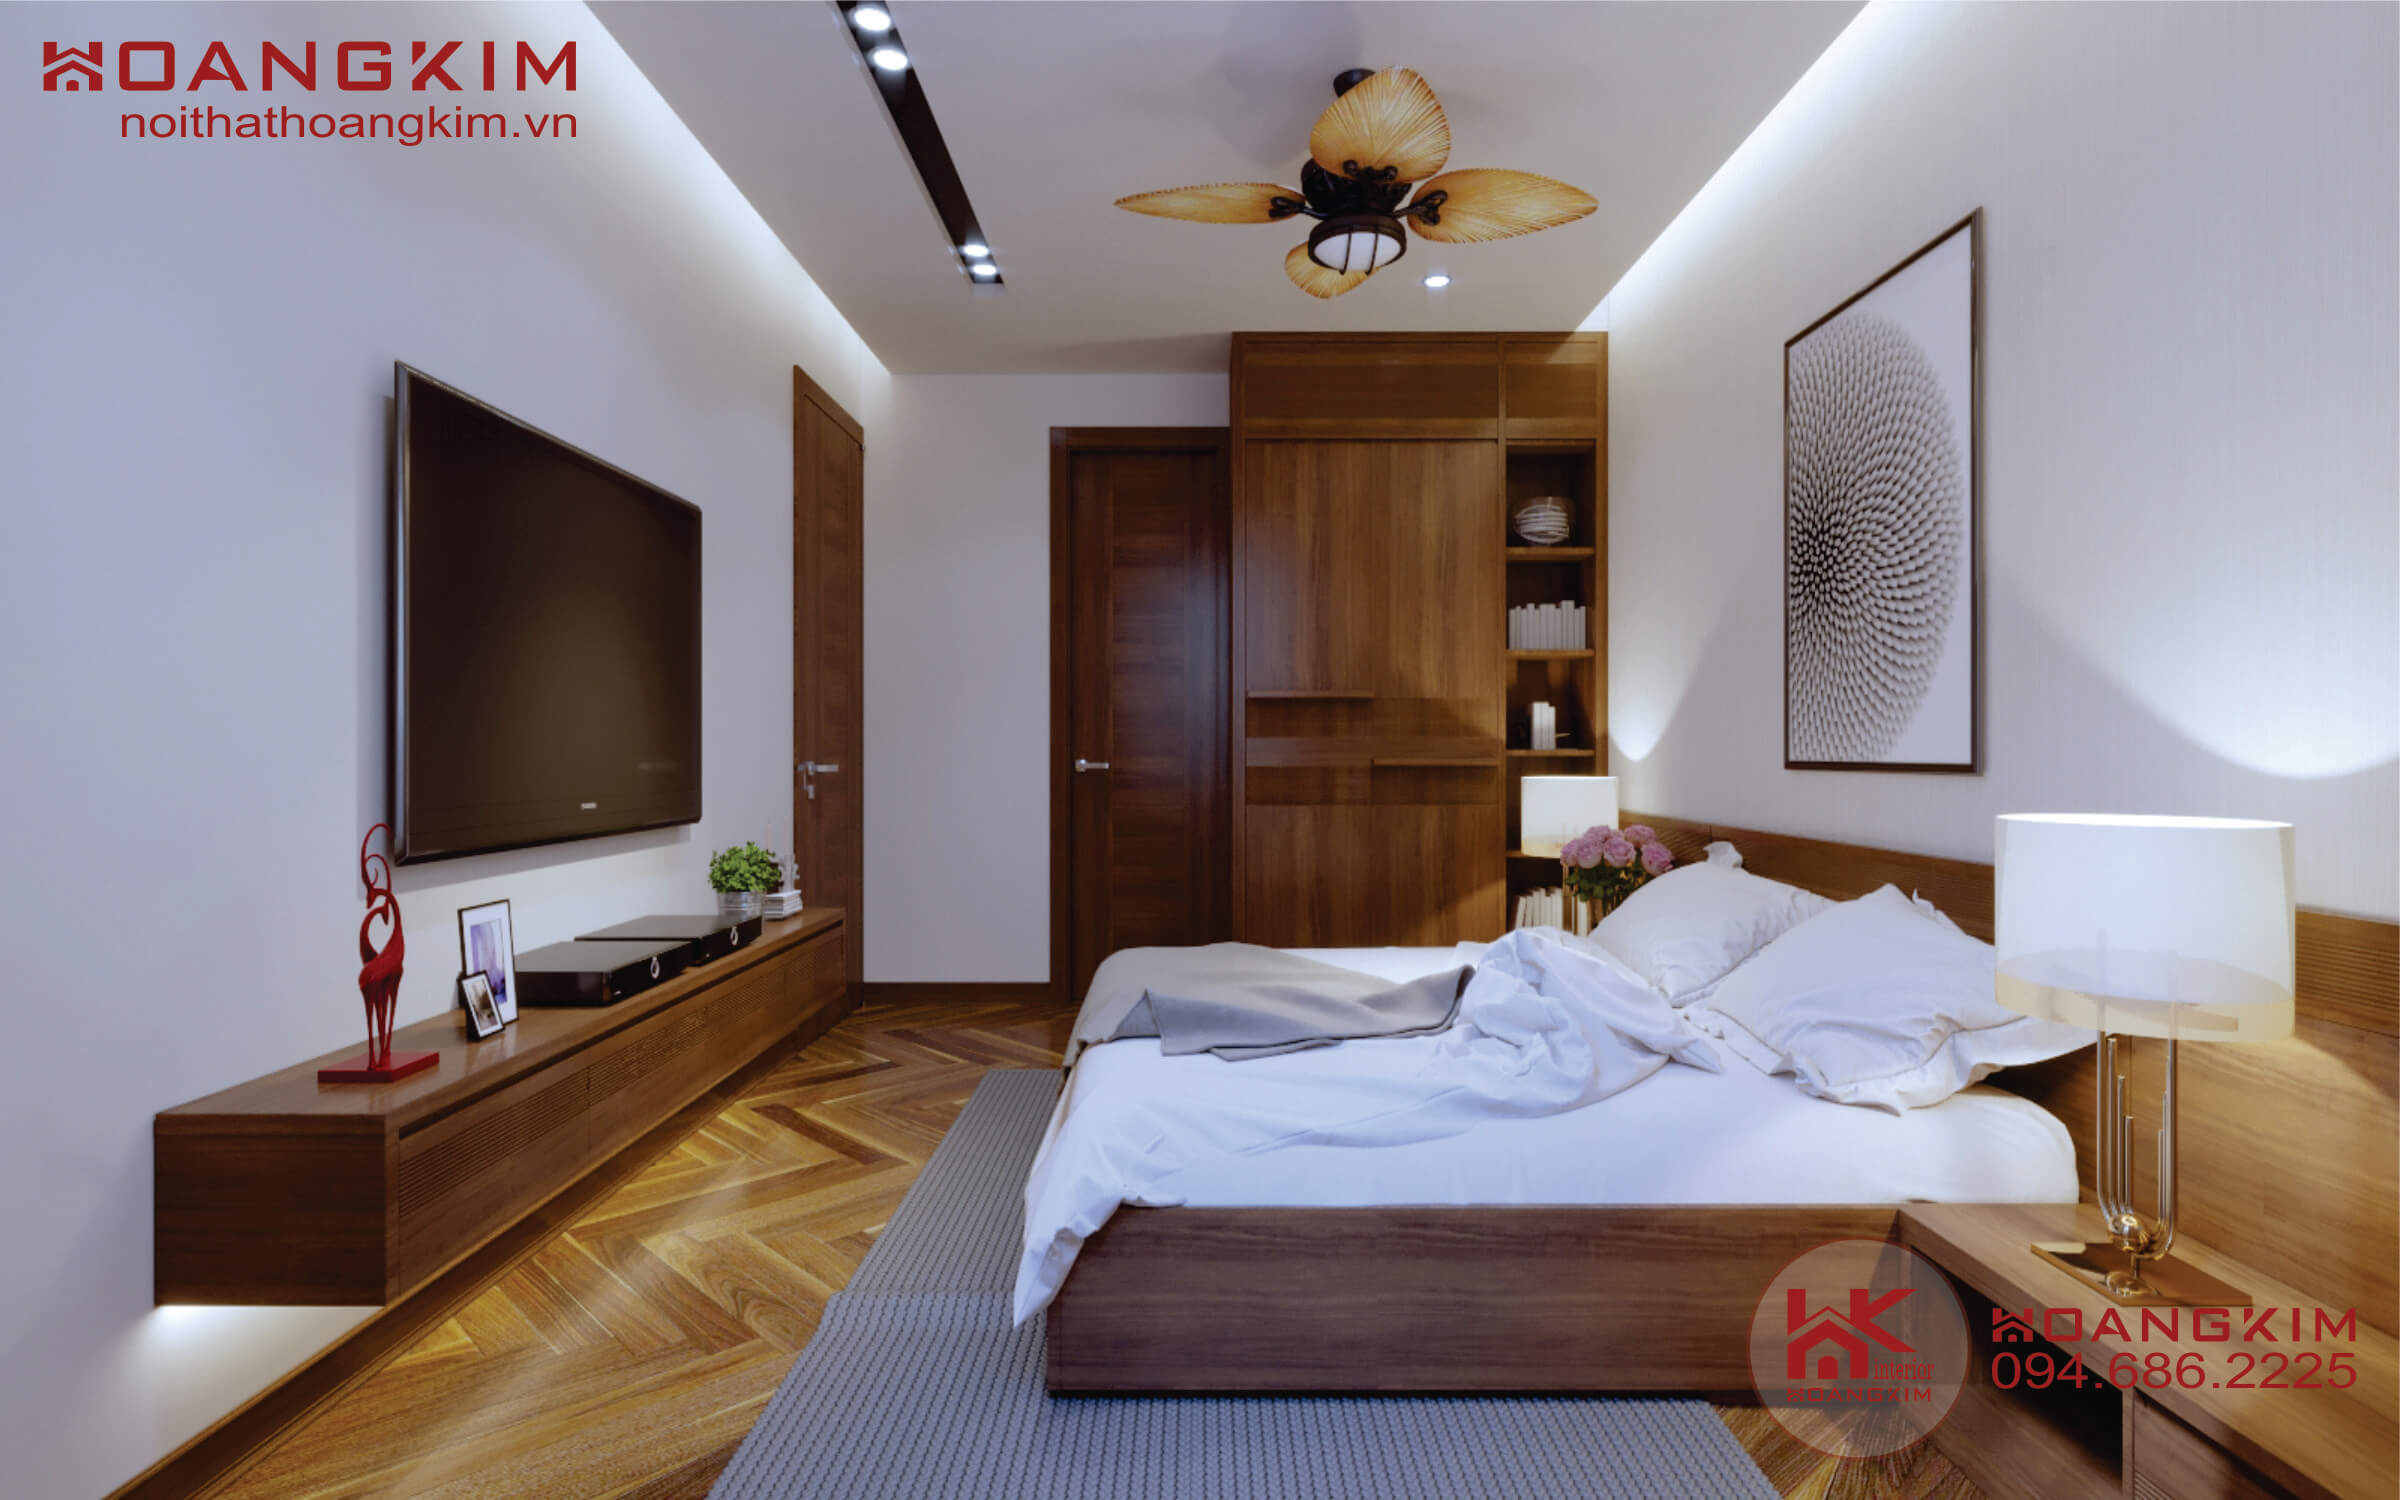 phòng ngủ chung cư mang phong cách nội thất tân cổ điển